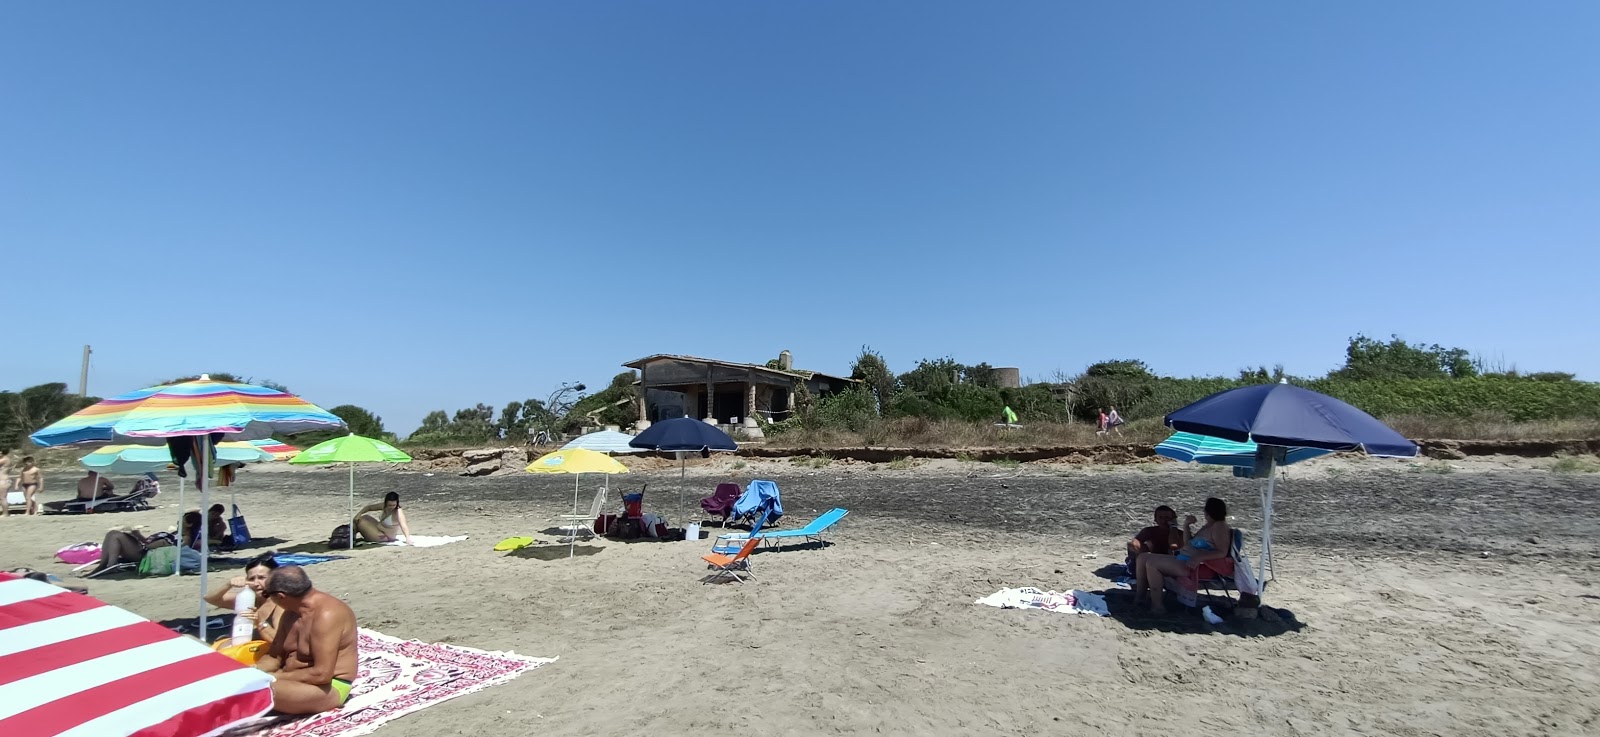 Spiaggia di Valmontorio'in fotoğrafı kısmen temiz temizlik seviyesi ile